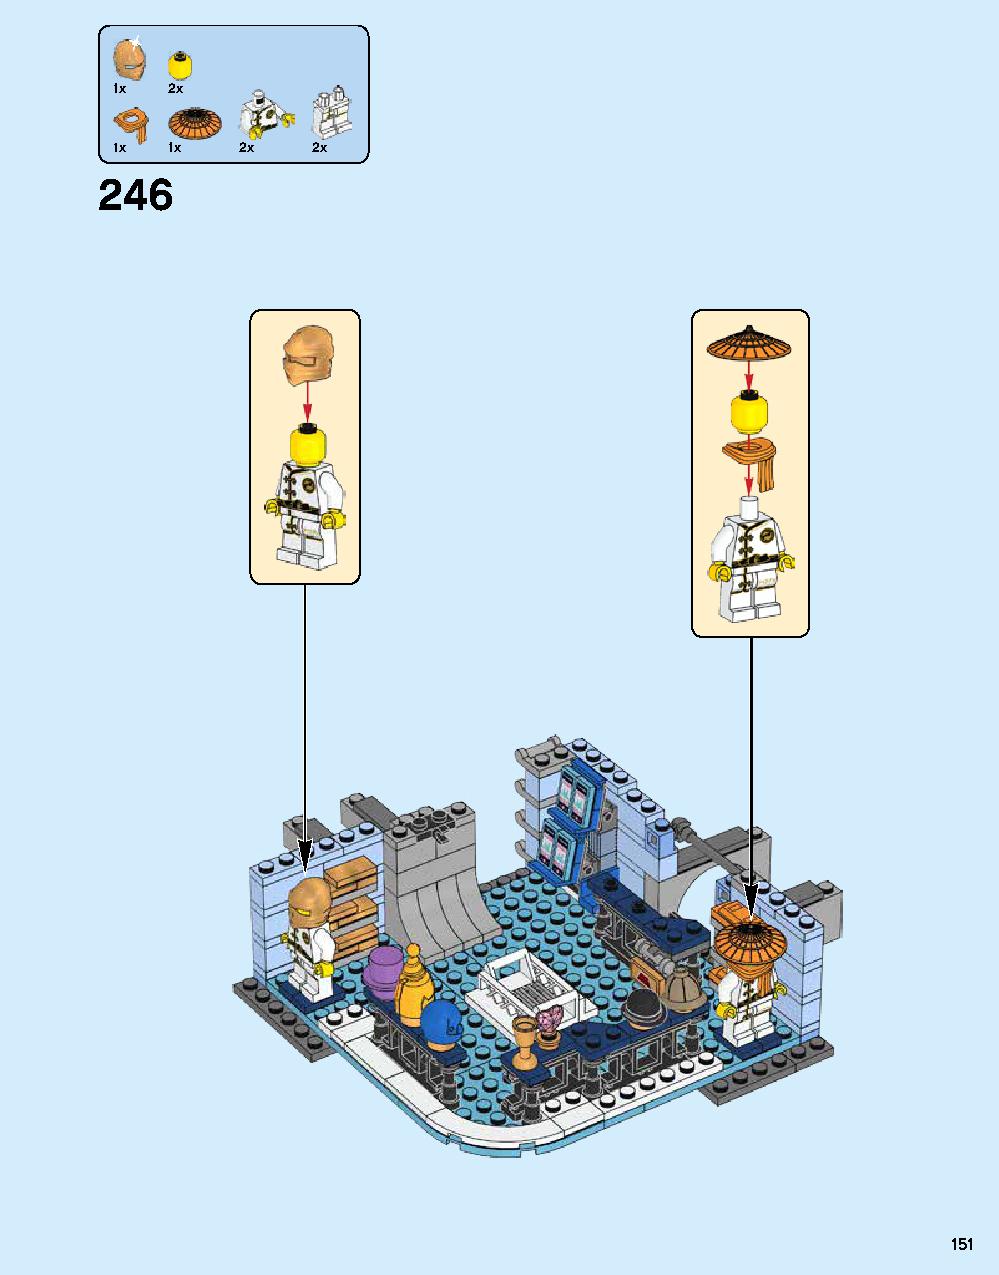 ニンジャゴー シティ 70620 レゴの商品情報 レゴの説明書・組立方法 151 page